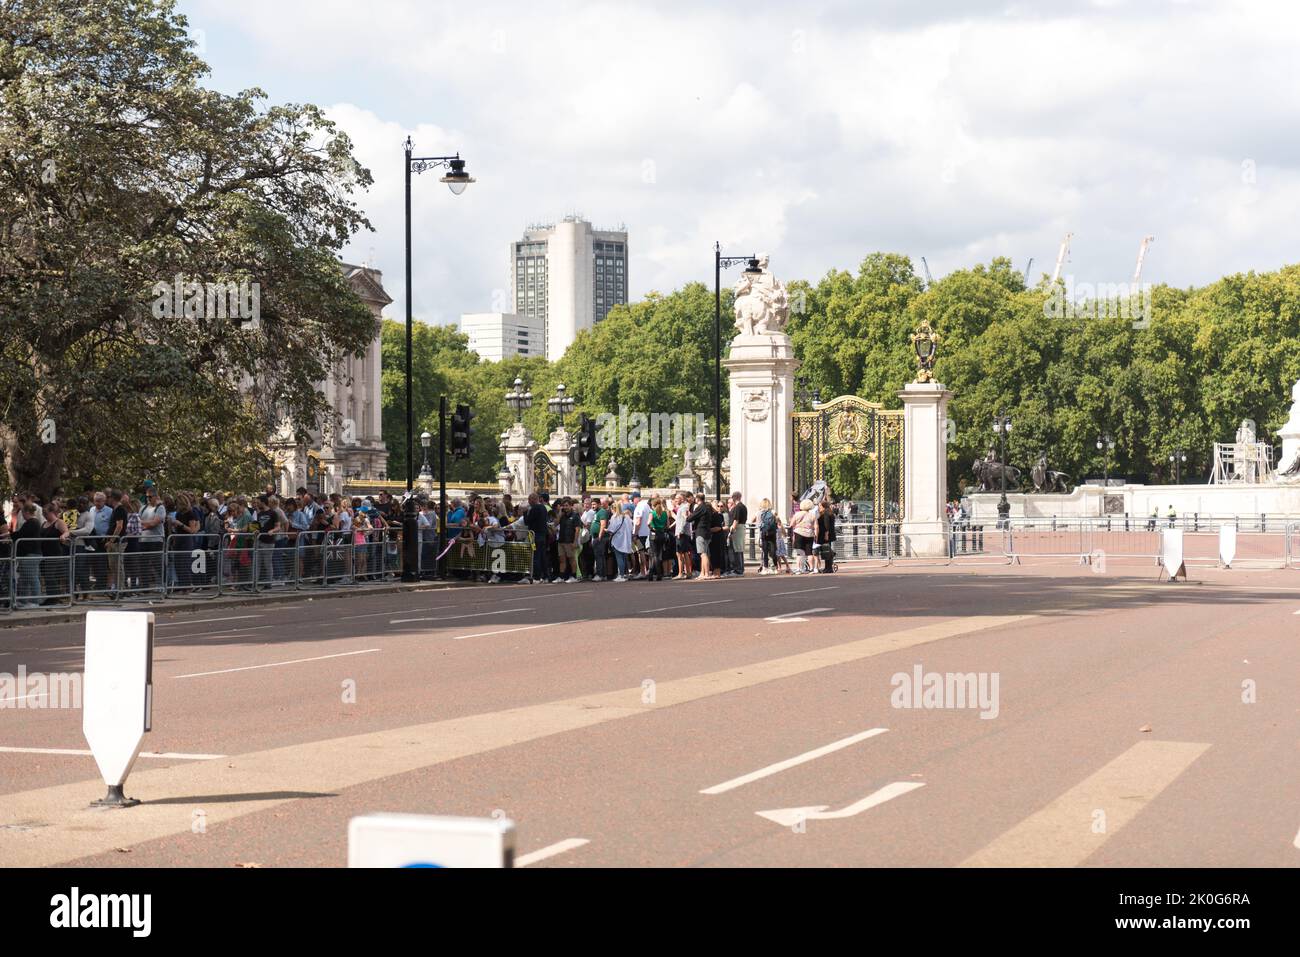 Menschen, die geduldig in einer langen Schlange stehen, um am Buckingham Palace Respekt zu zollen Stockfoto